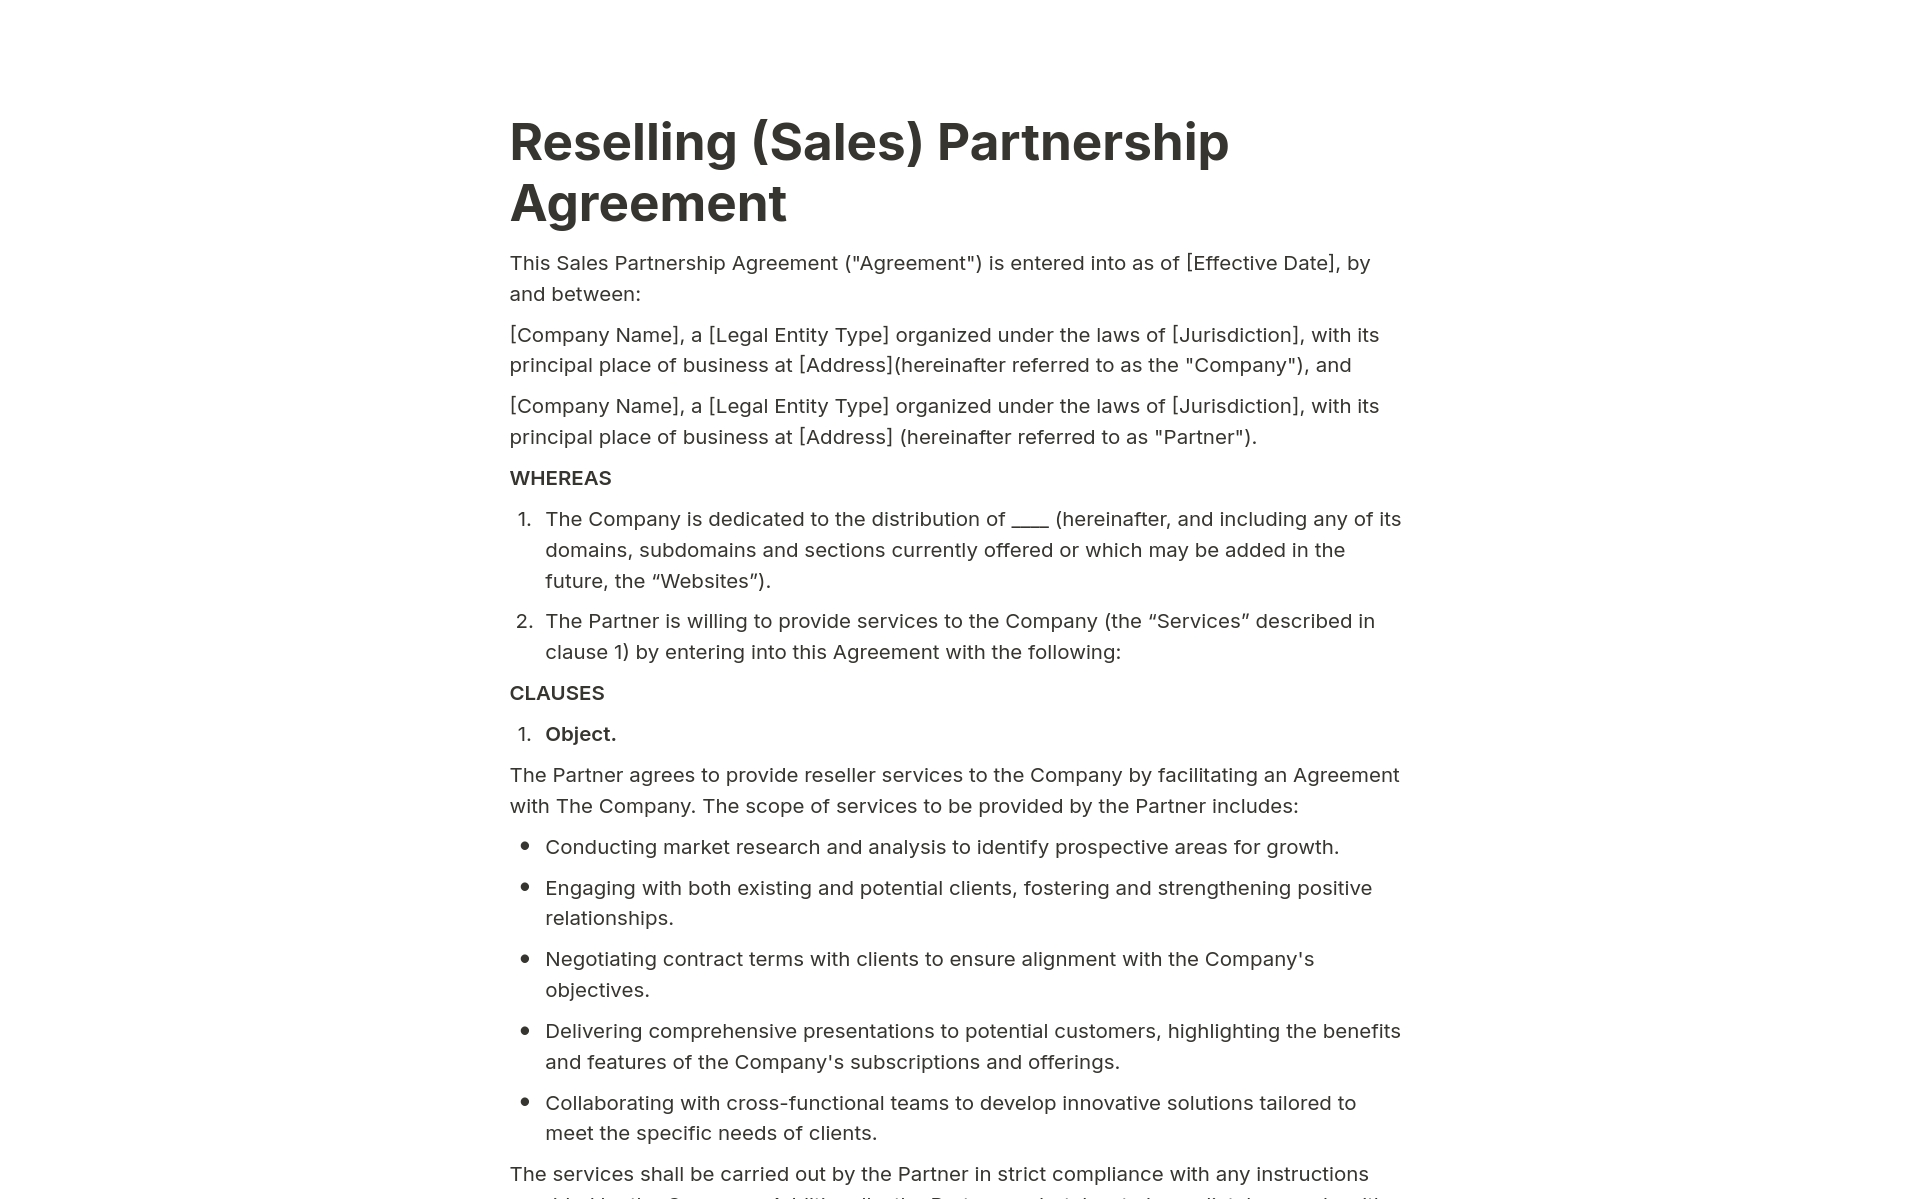 En förhandsgranskning av mallen för Reselling (Sales) Partnership Agreement